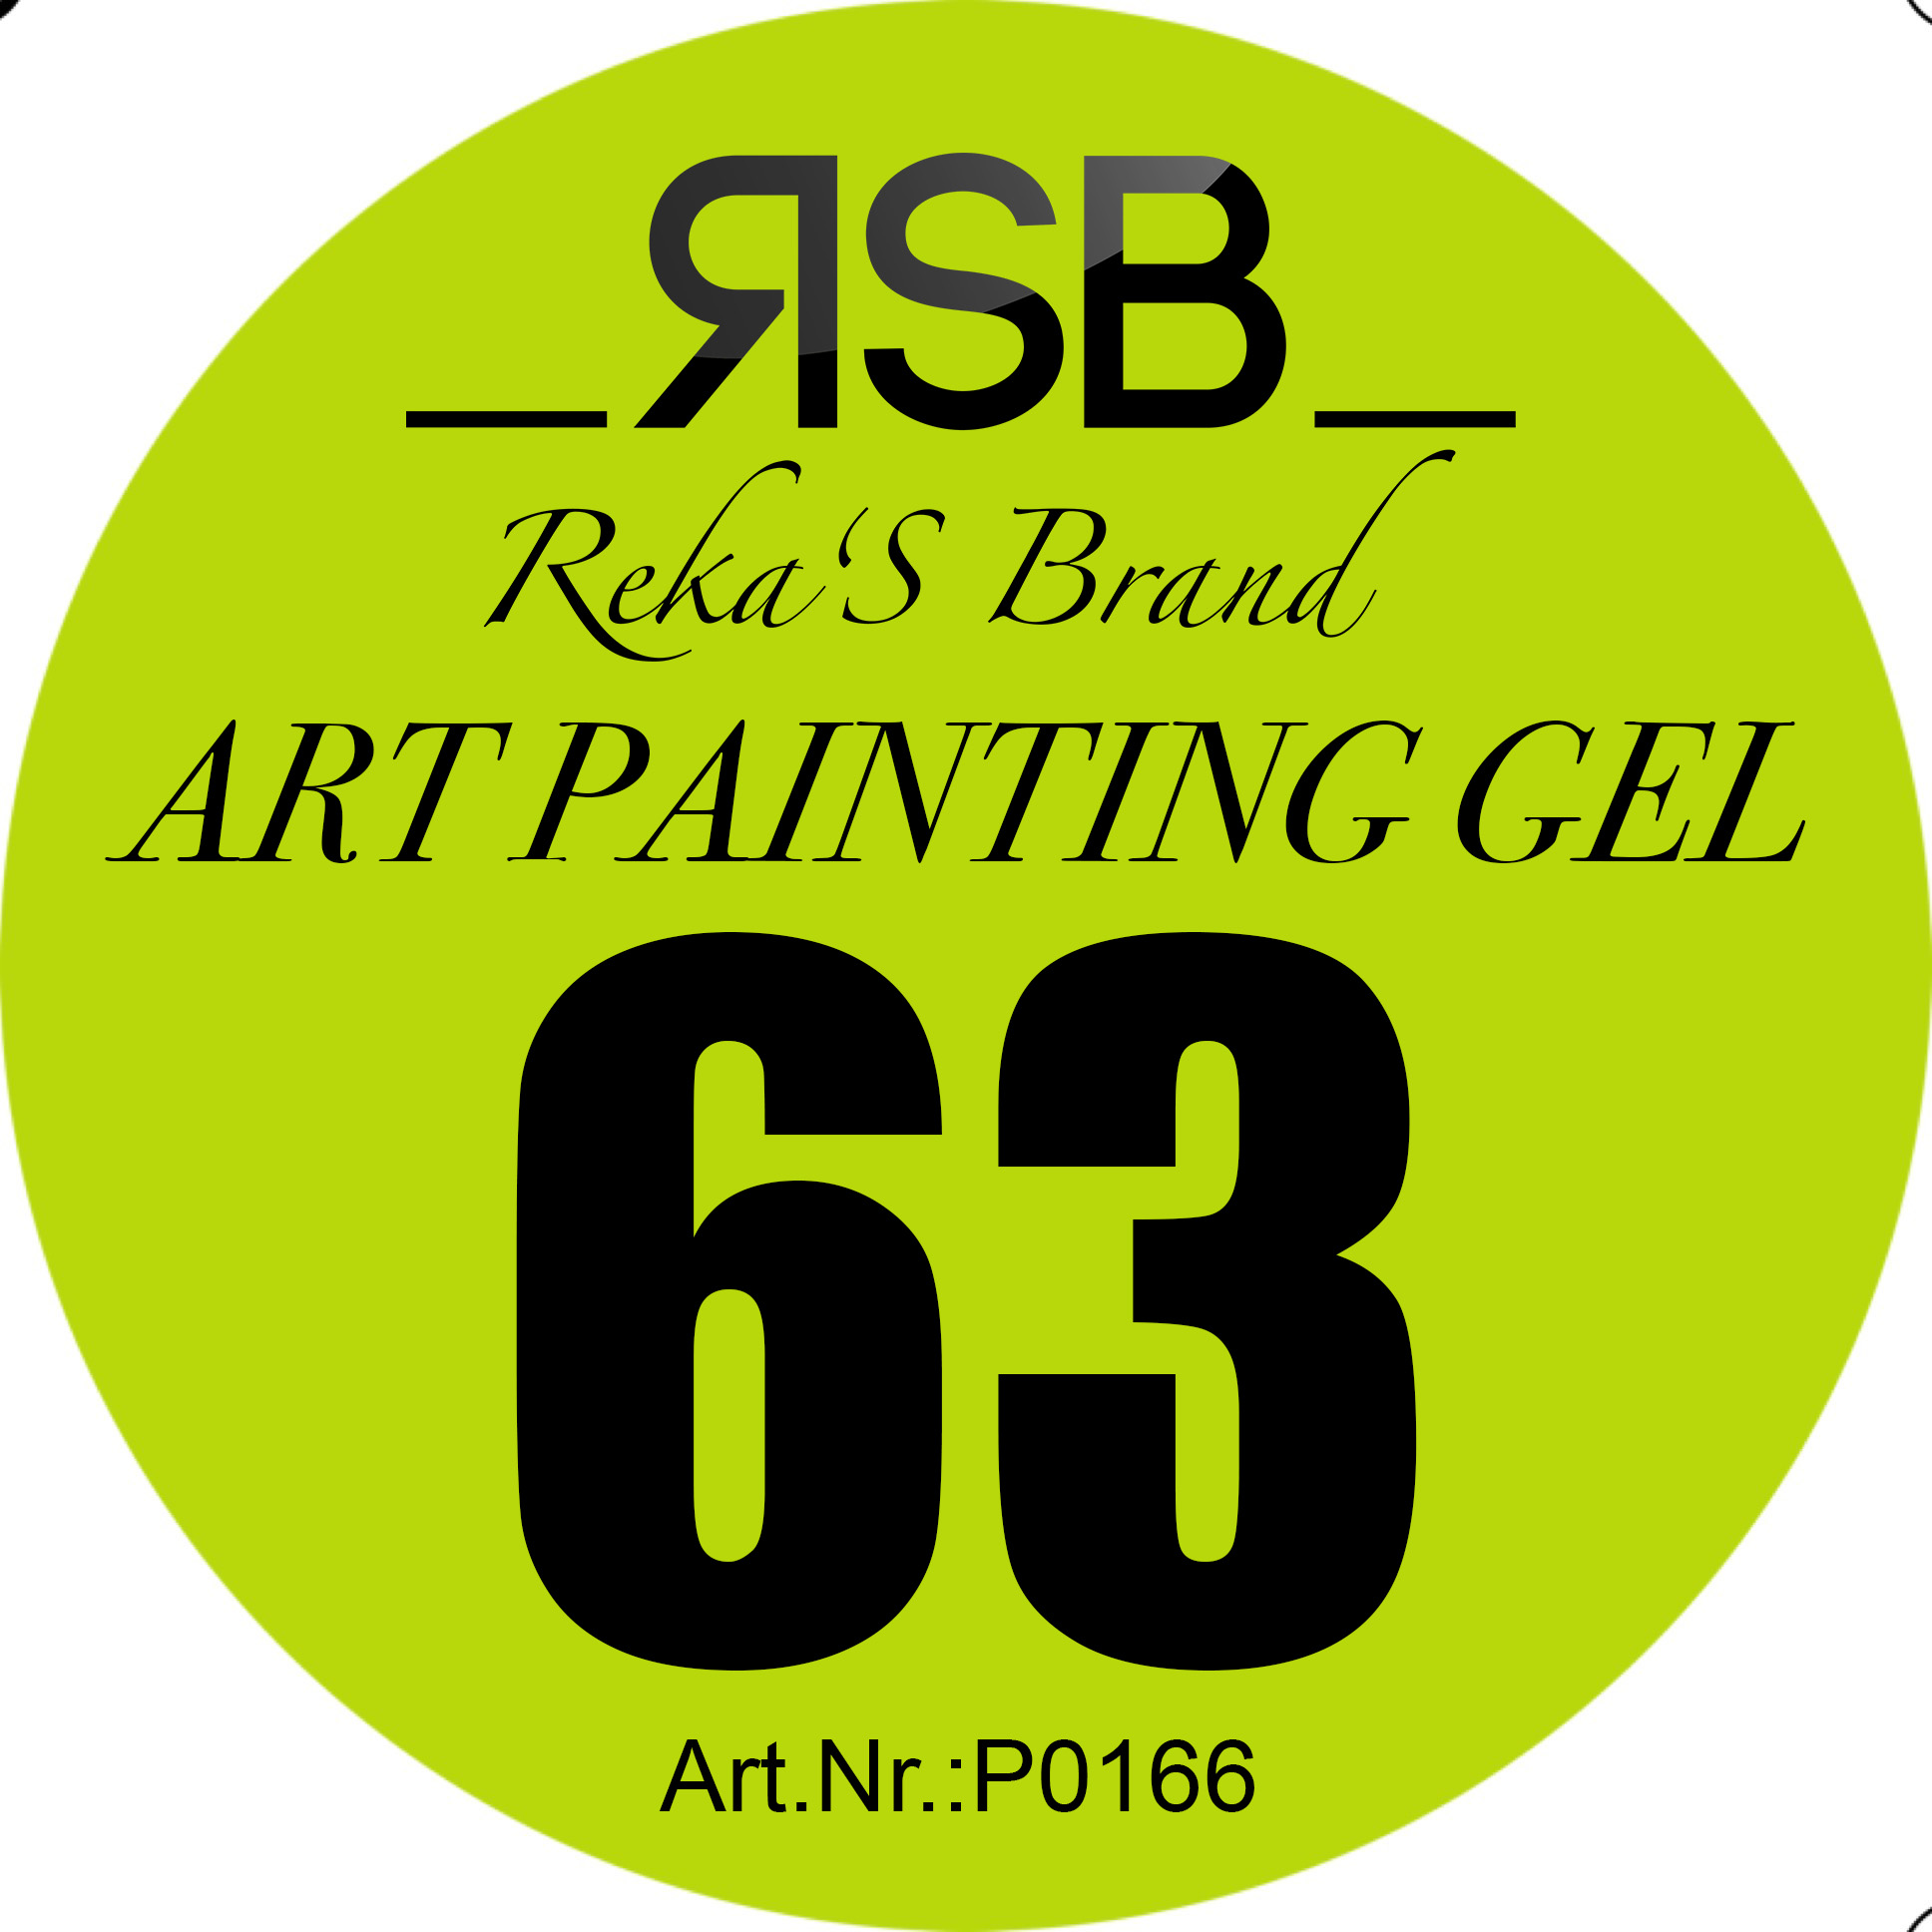 ART PAINTING GEL 63